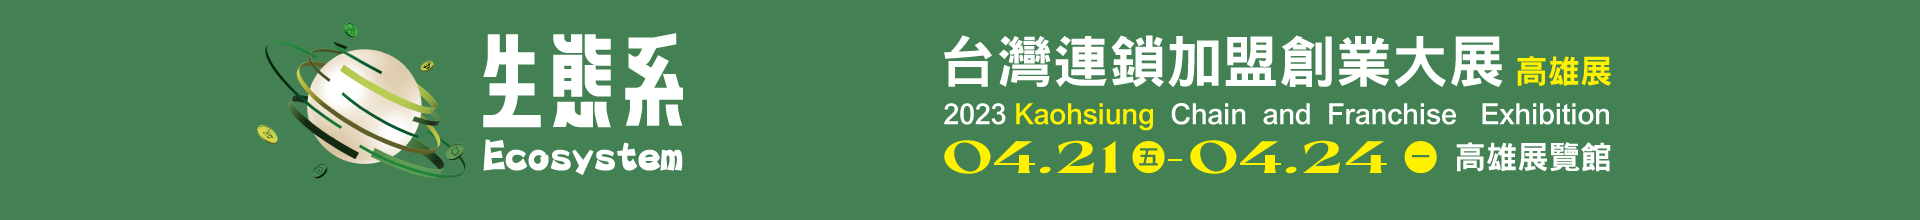 2023台灣連鎖加盟創業大展-高雄展